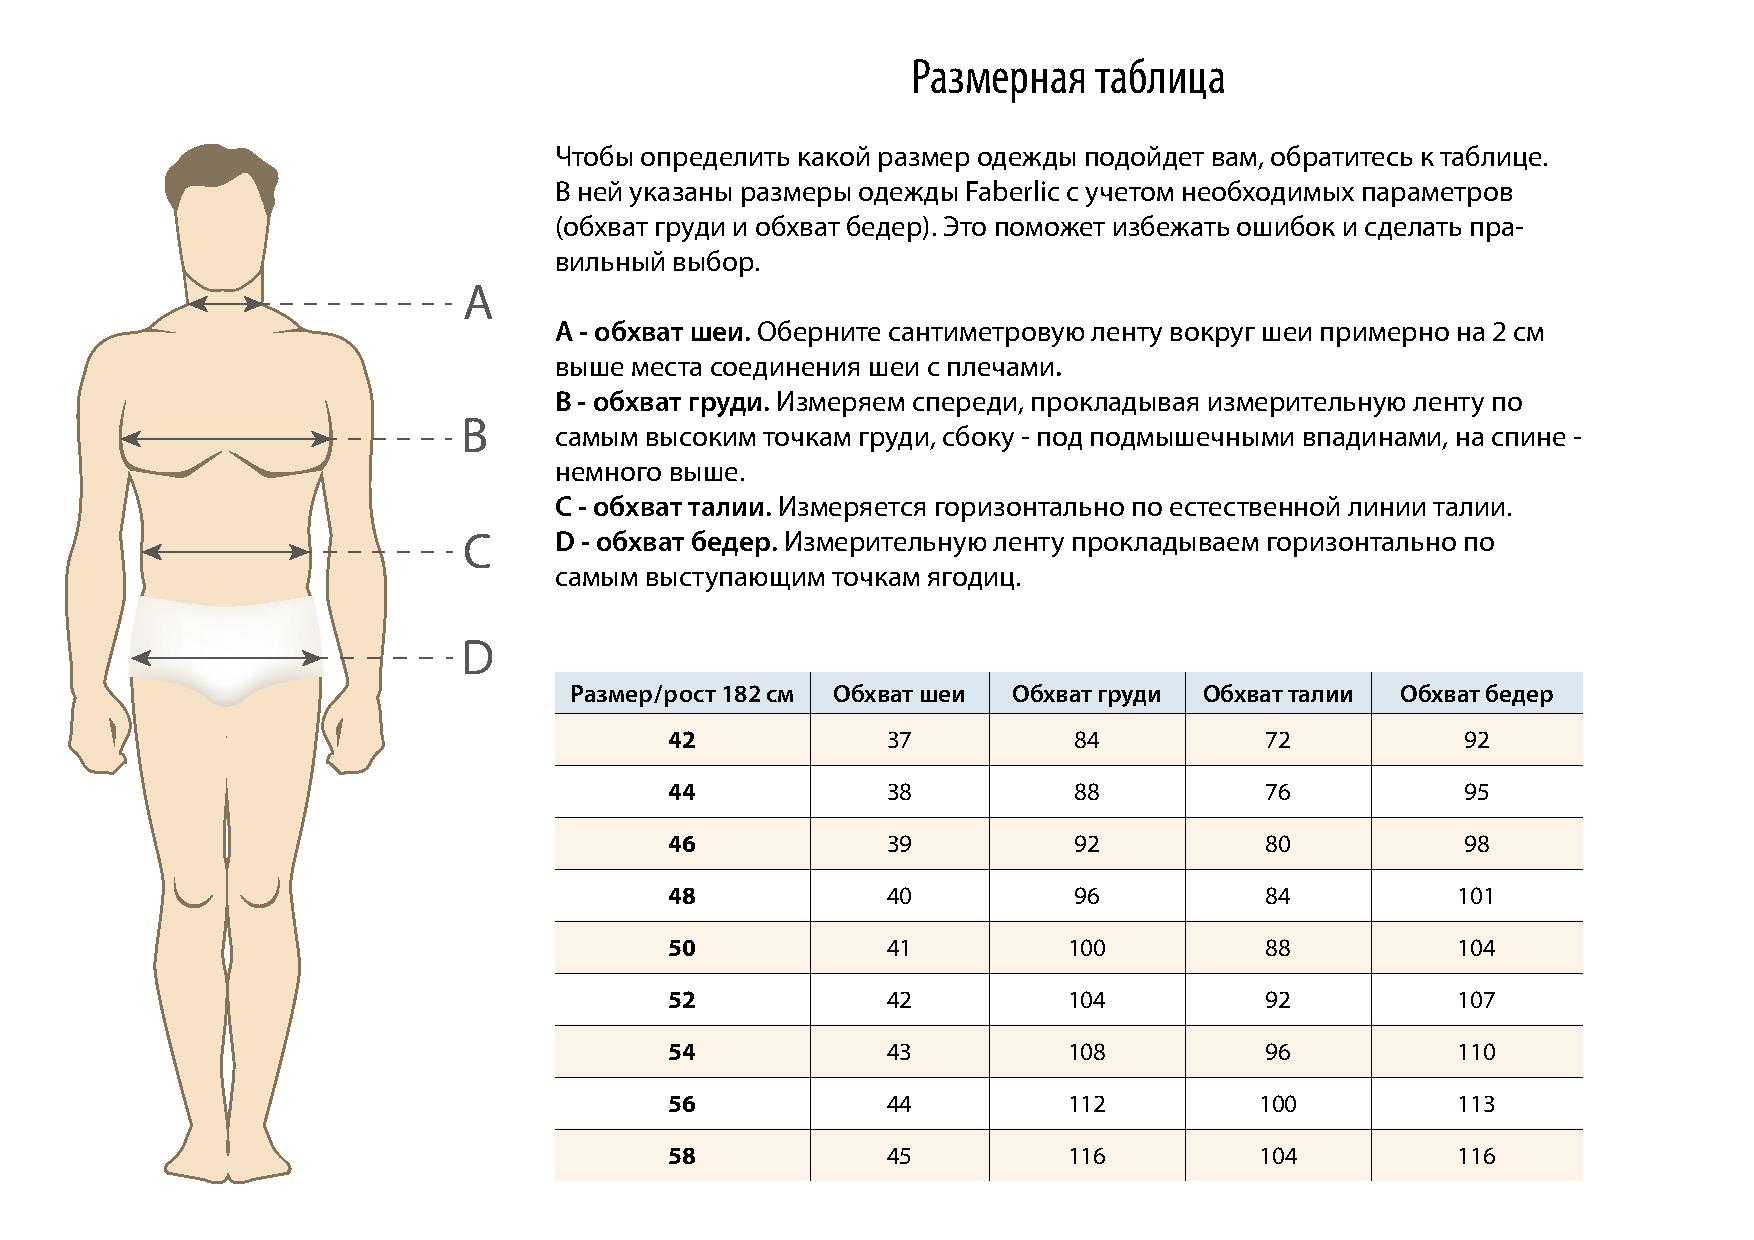 Таблица размеров женской одежды в соответствии с российскими